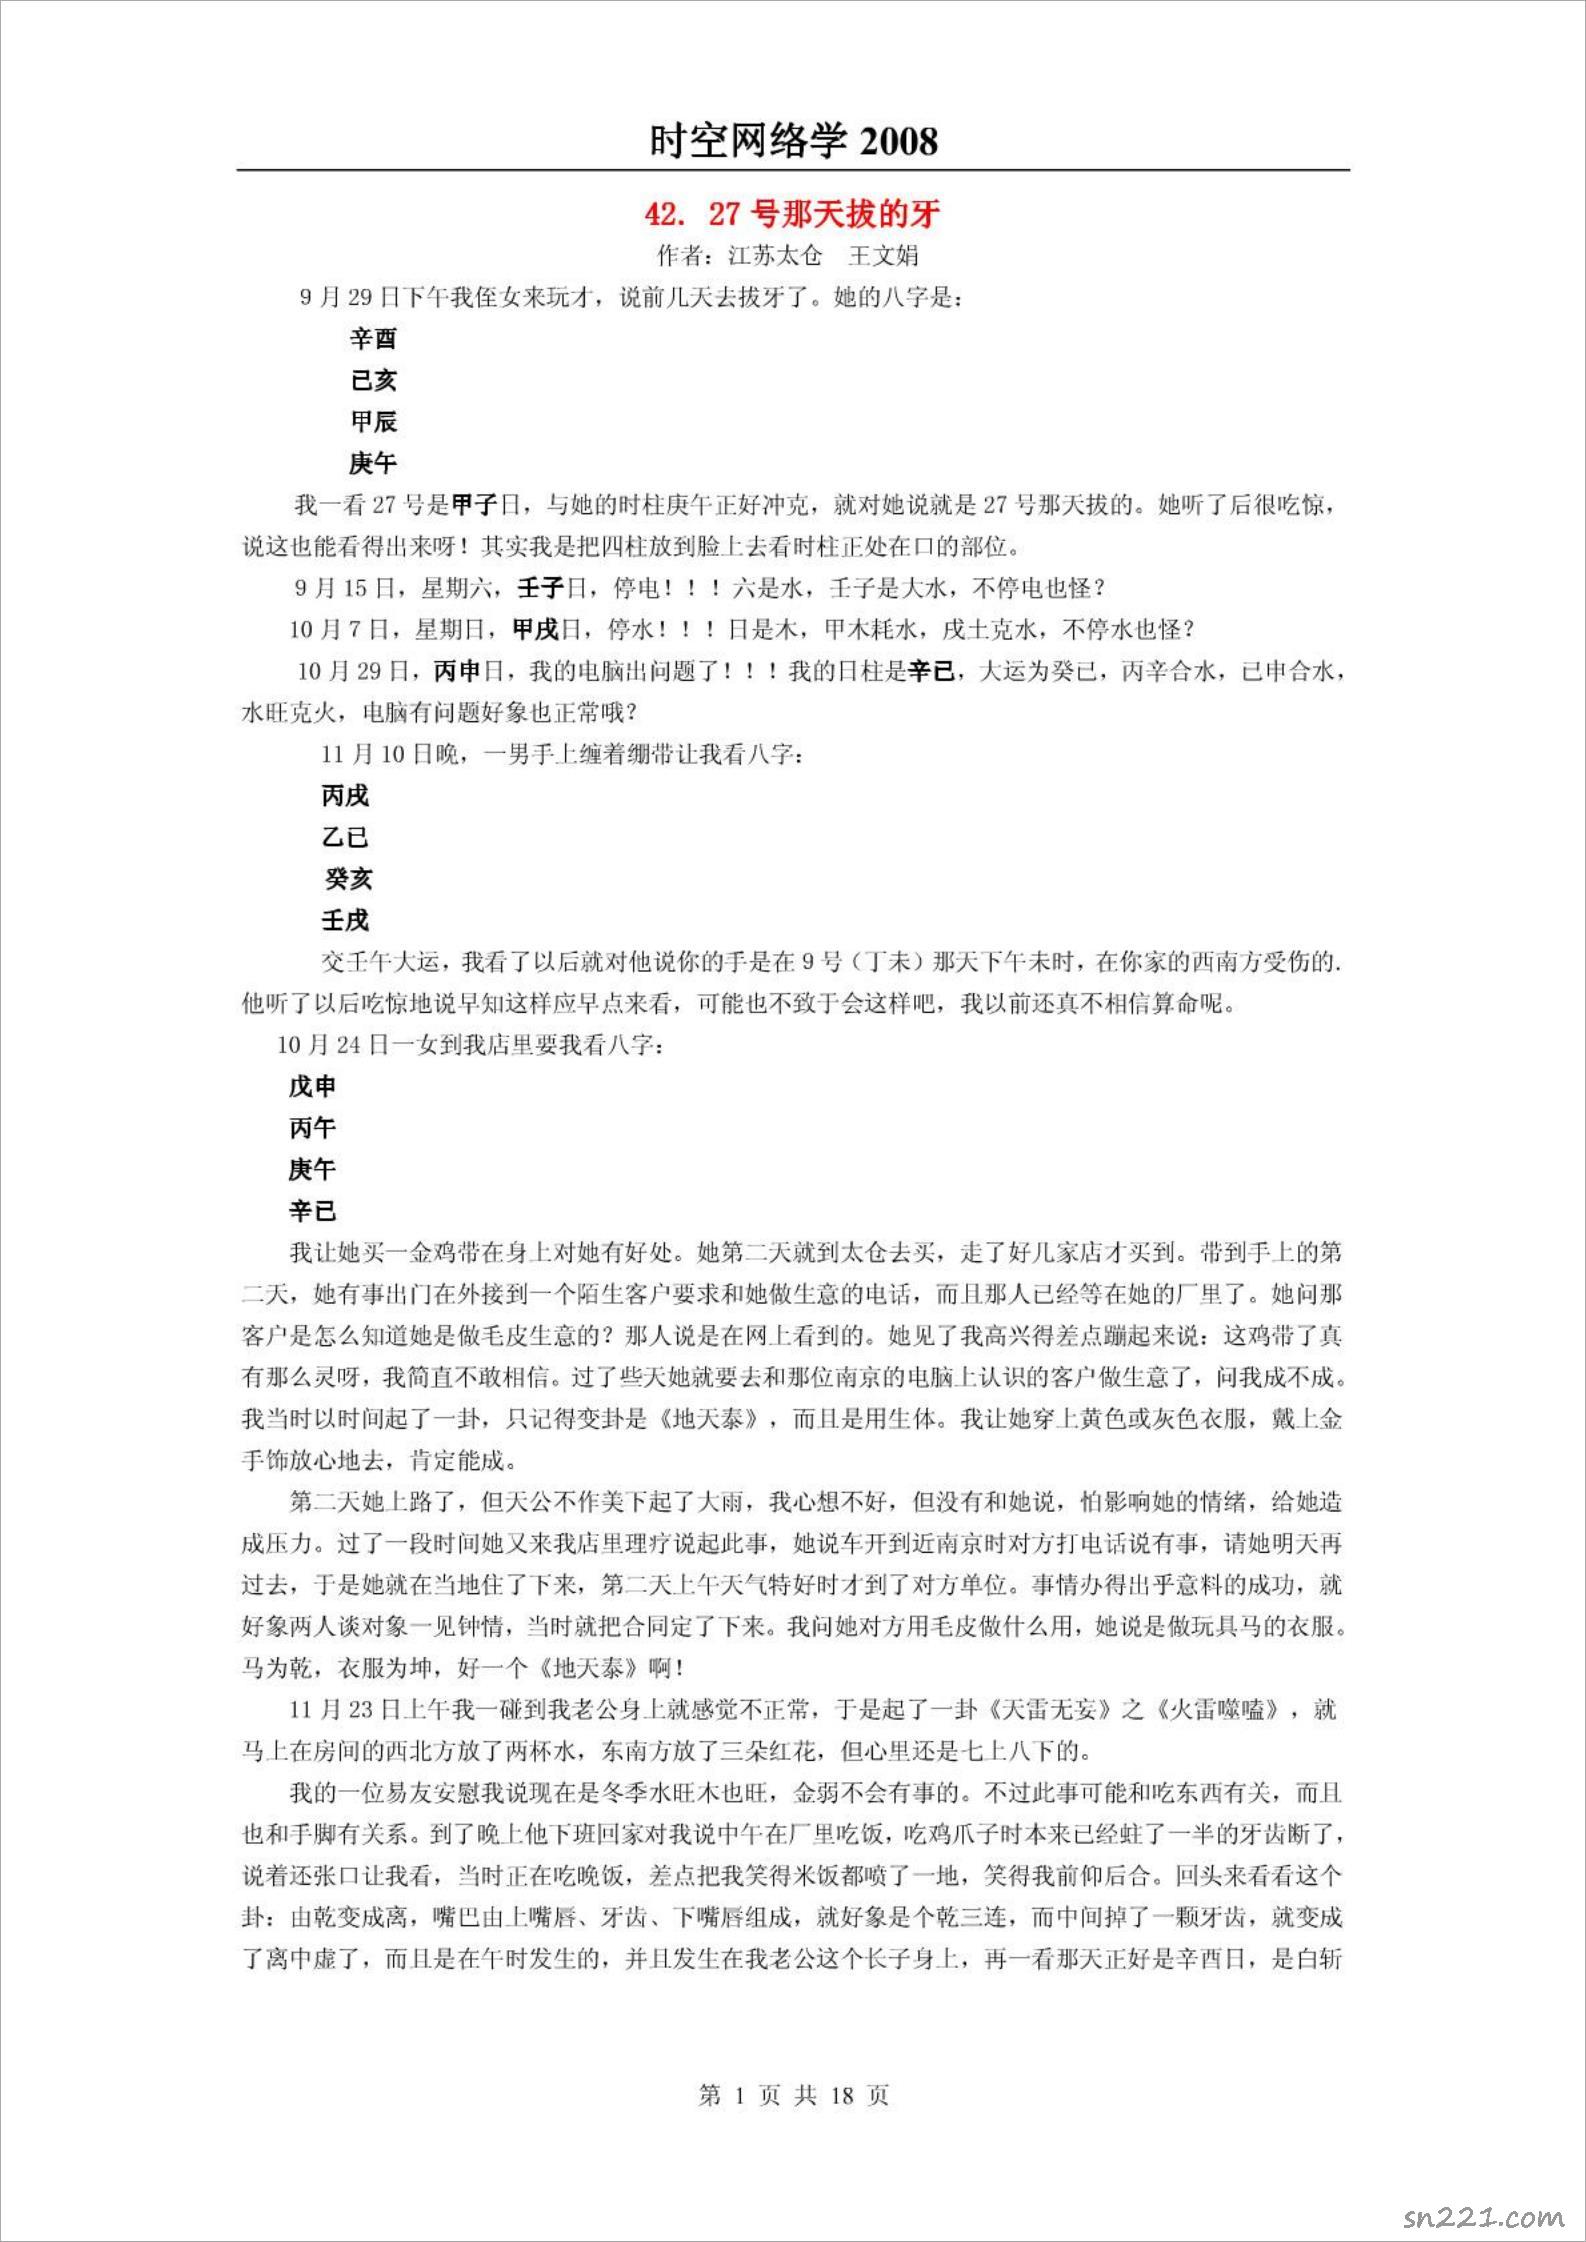 黃鑒-《易魂—時空網絡學》（2008）18頁.pdf